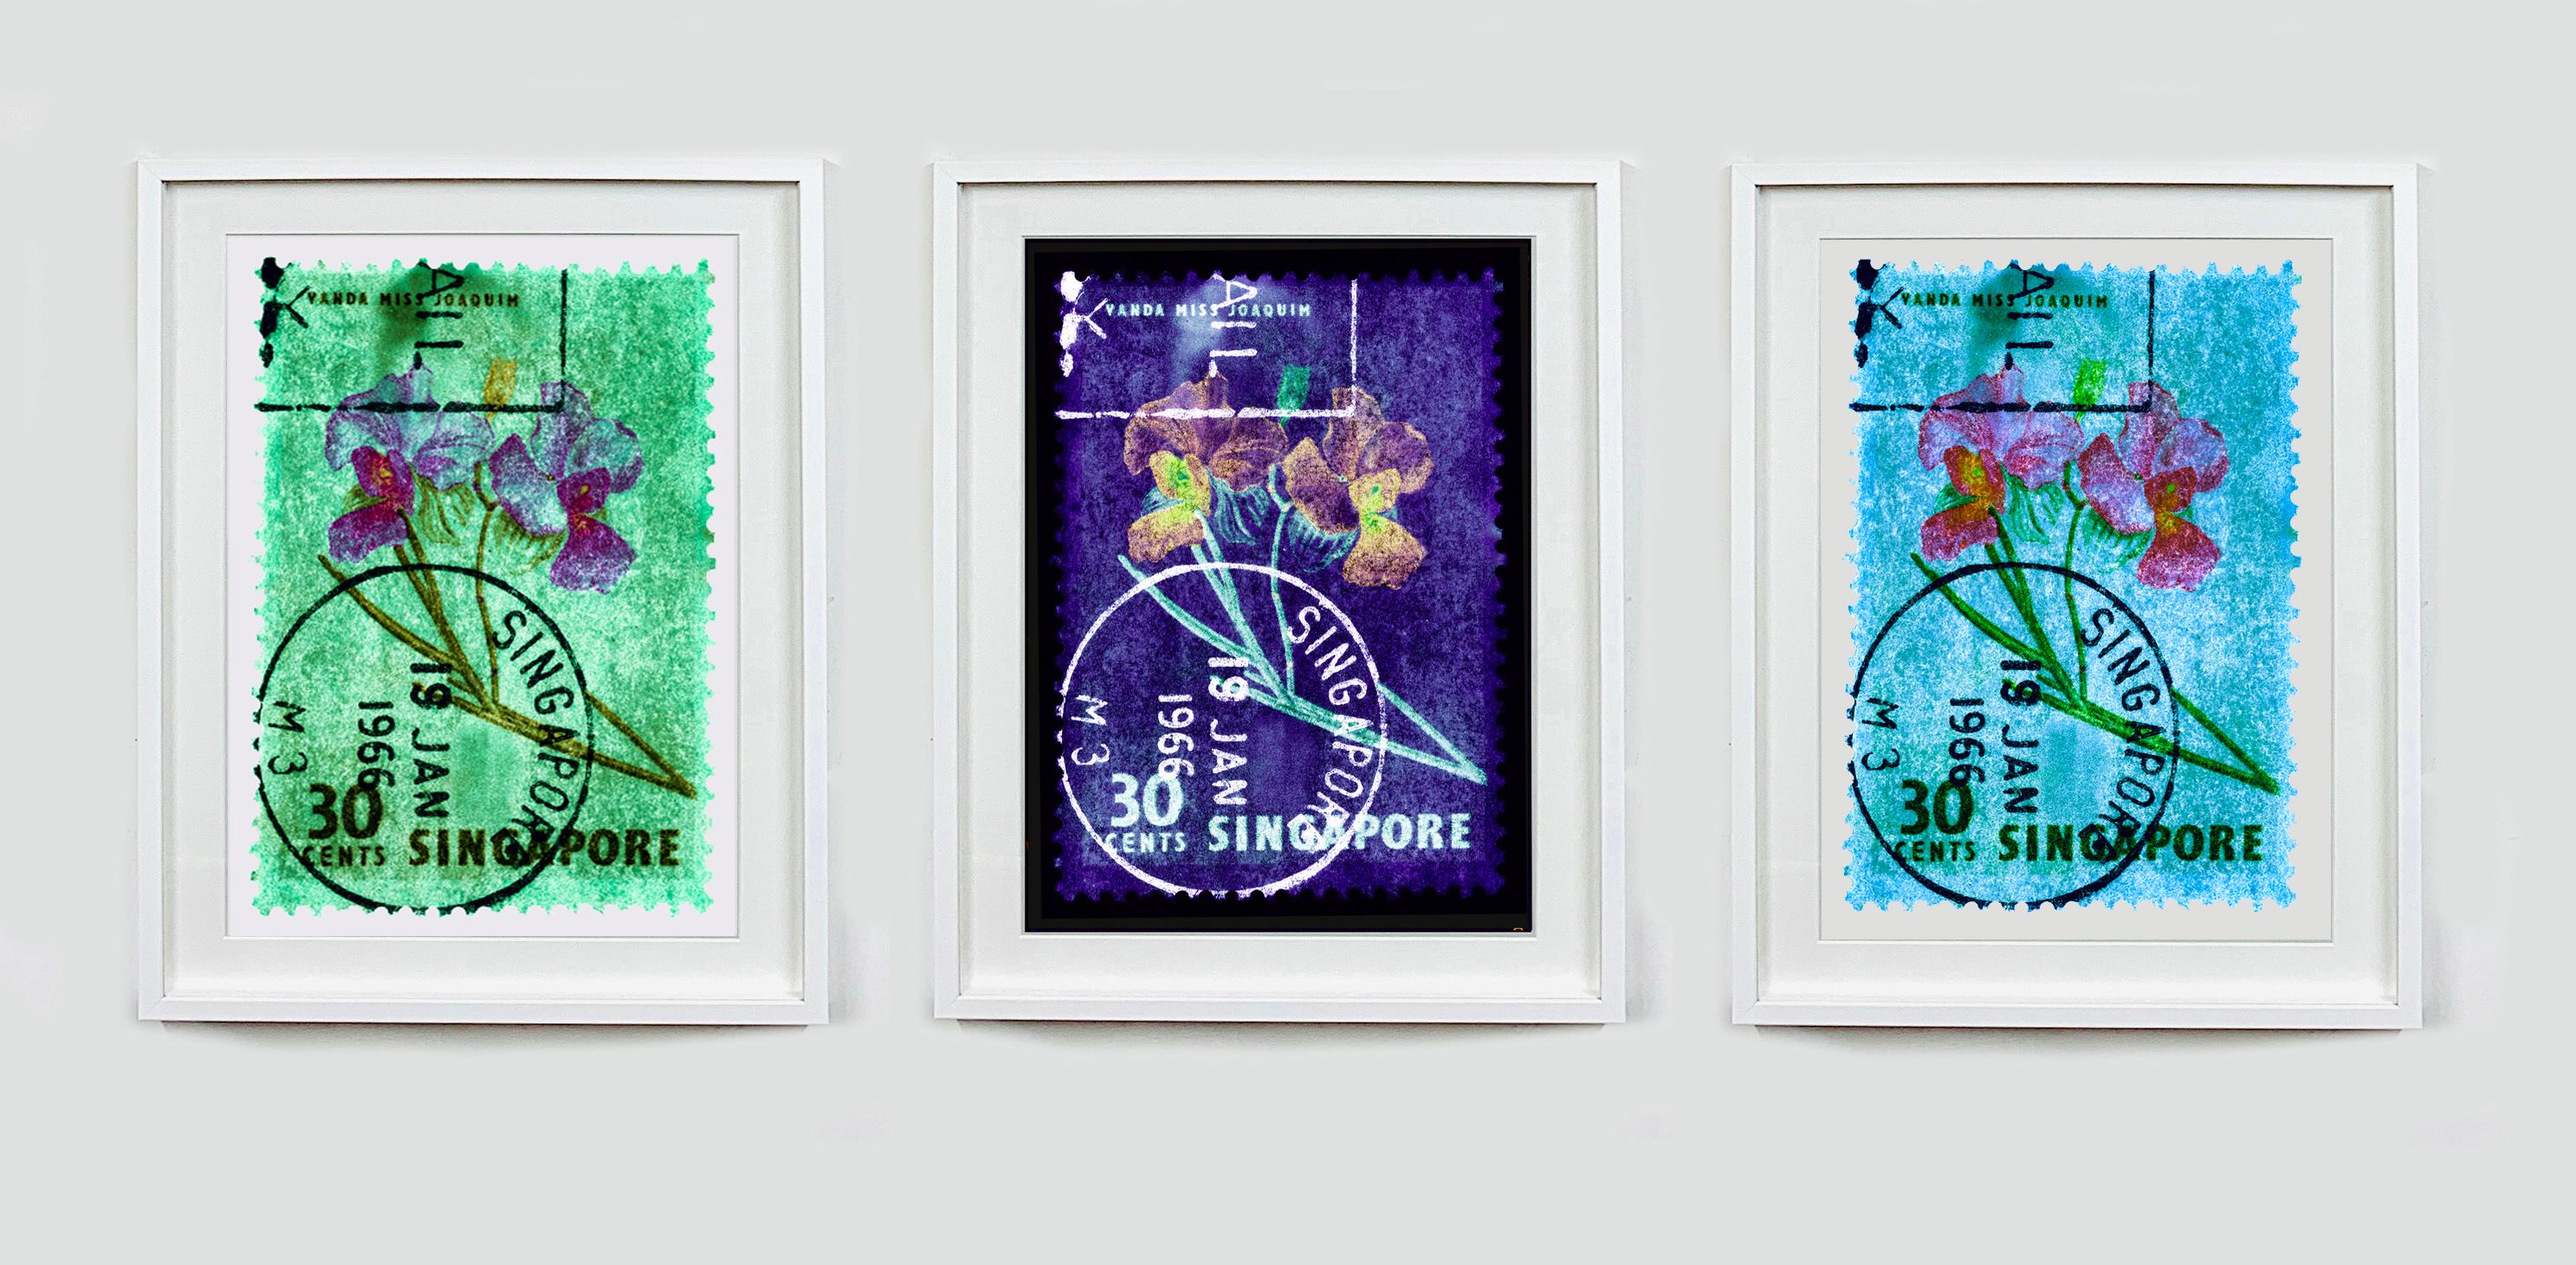 30 Cents Singapur Orchidee Grün, aus der Heidler & Heeps Stamp Collection'S.
Die historischen Briefmarken der Heidler & Heeps Stamp Collection'S, Singapore Series 'Postcards from Afar' wurden mit Pop Art des einundzwanzigsten Jahrhunderts neu